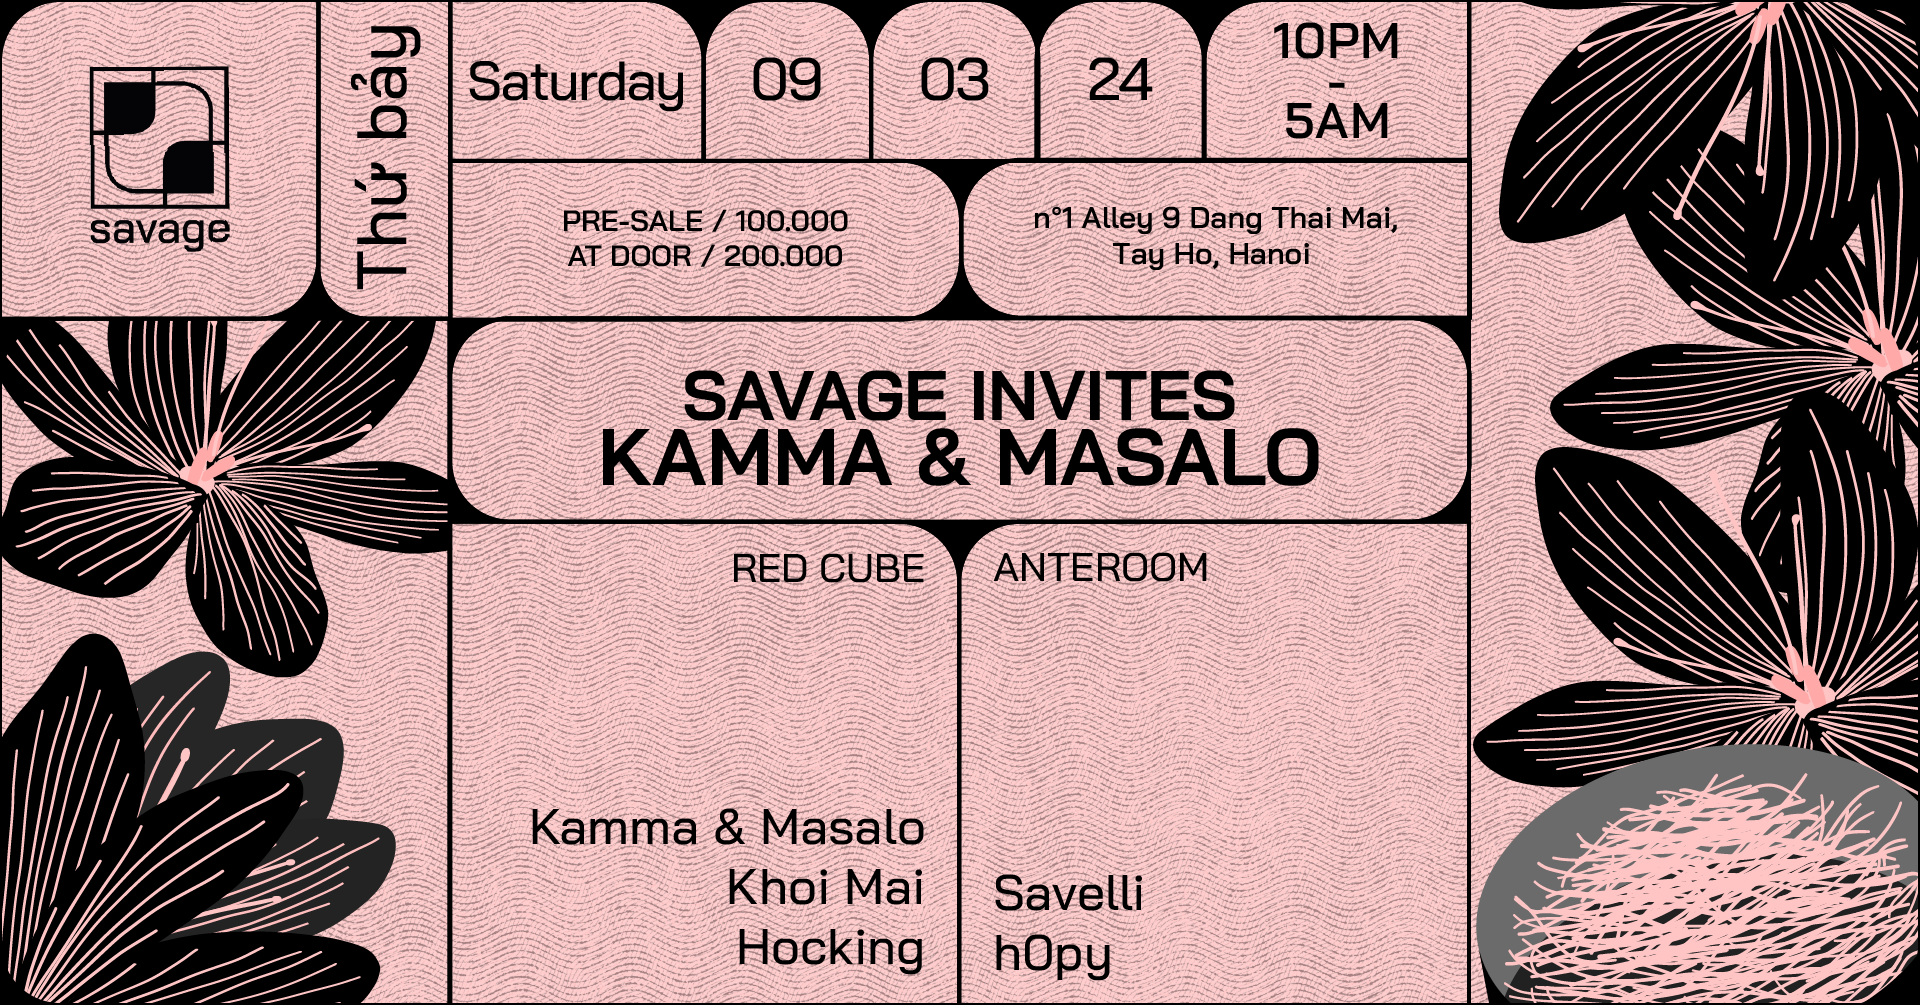 Savage Invites Kamma & Masalo - フライヤー裏